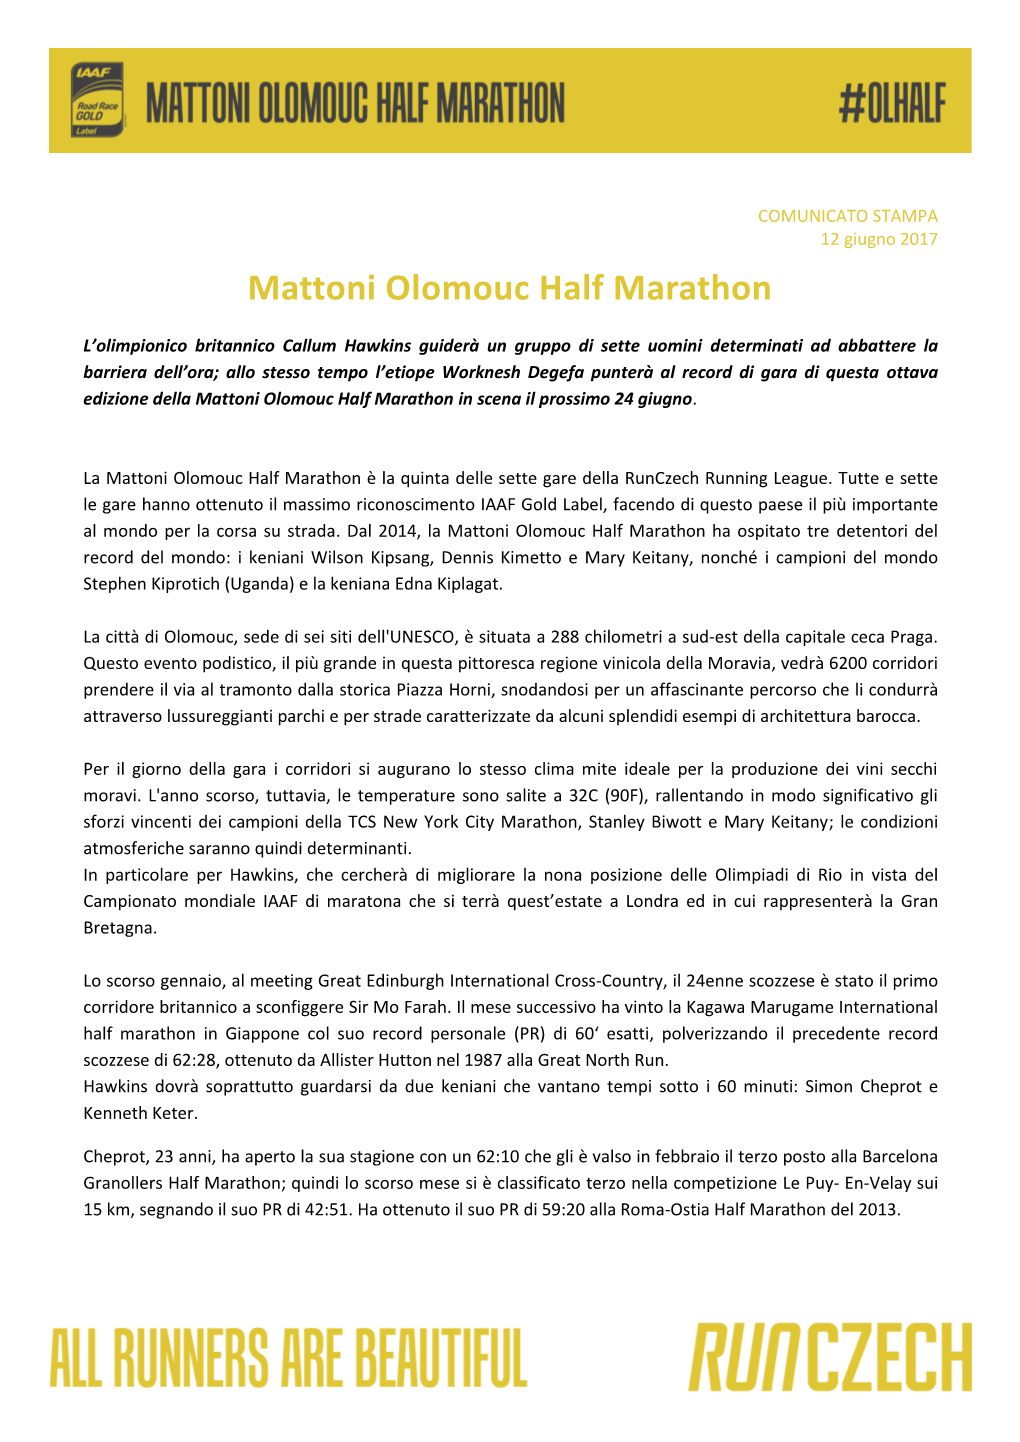 Mattoni Olomouc Half Marathon